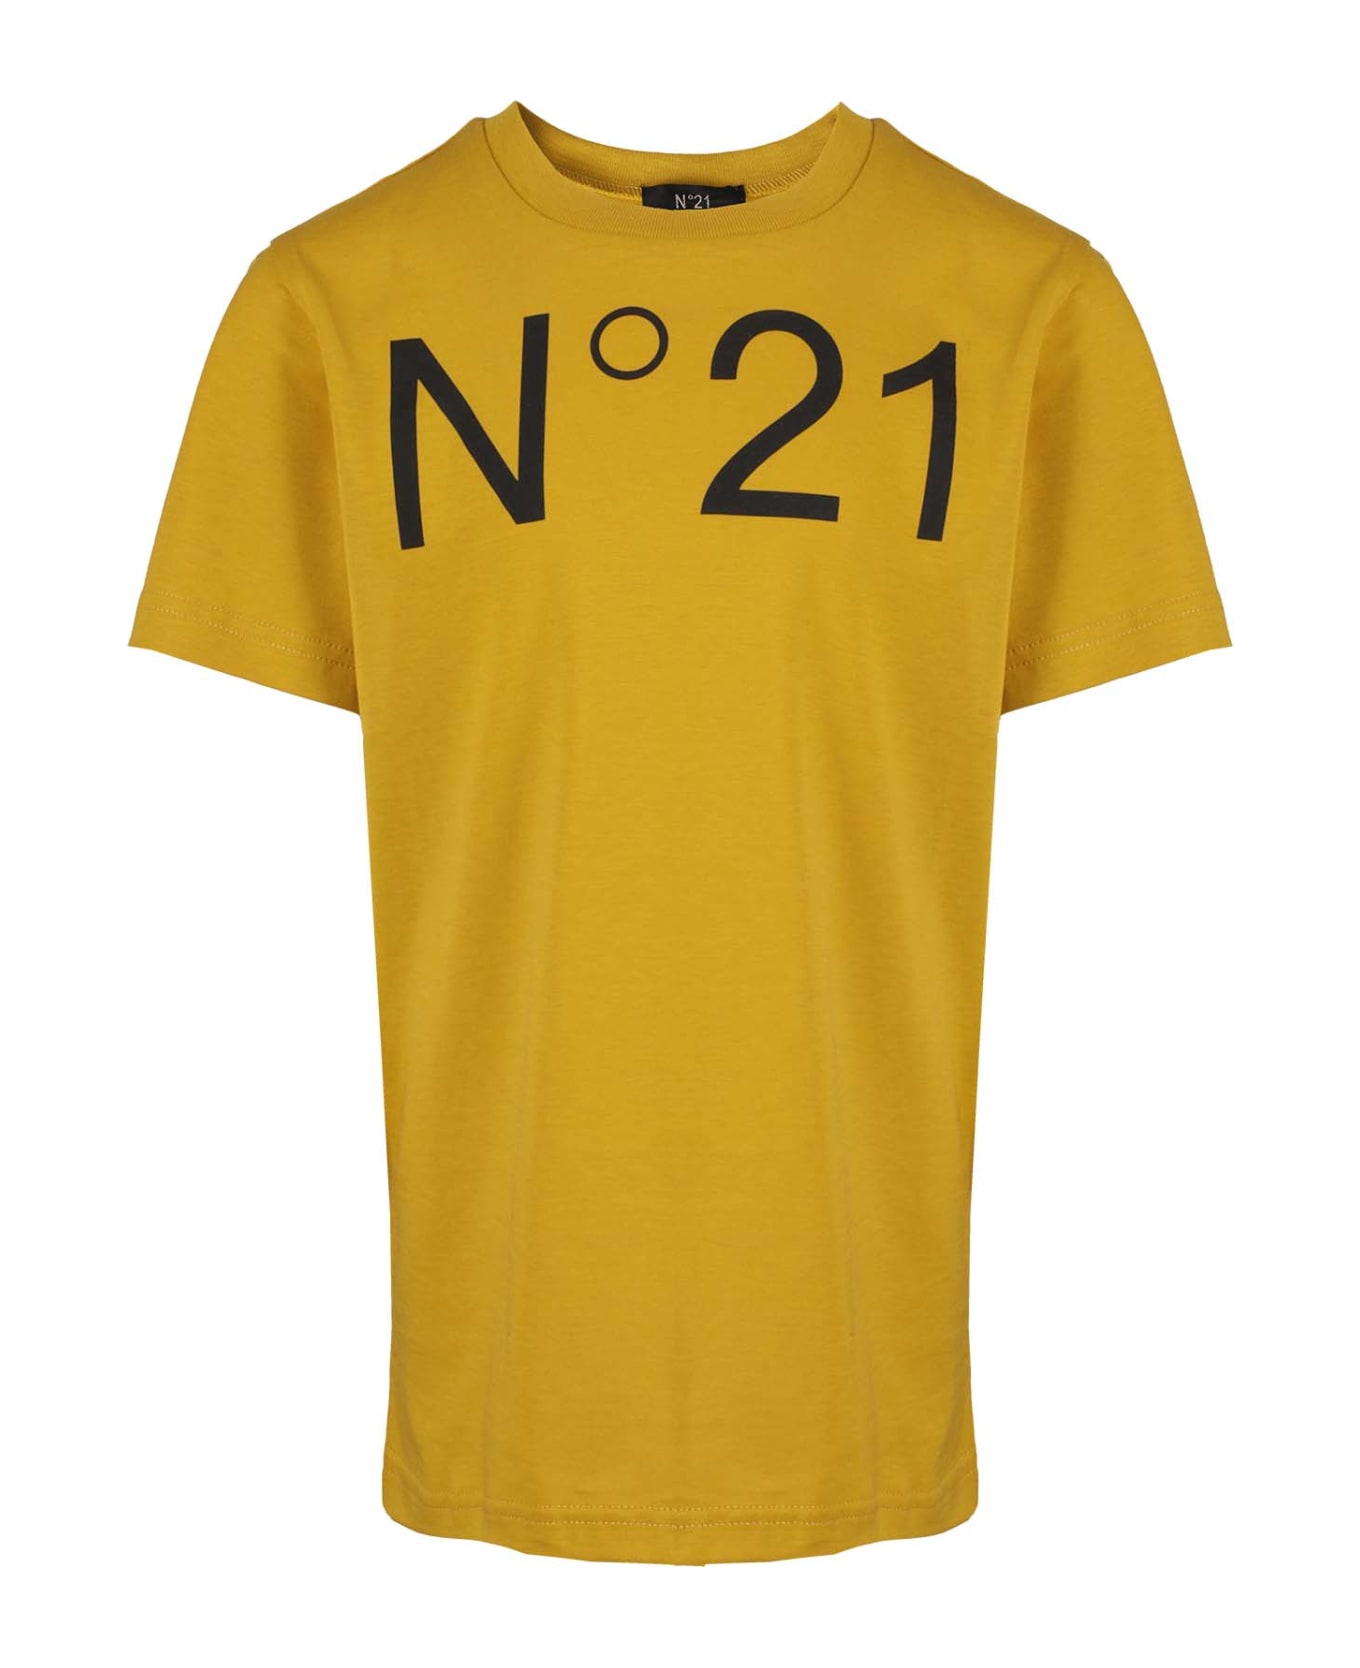 N.21 Maglietta - Mustard Yellow Tシャツ＆ポロシャツ